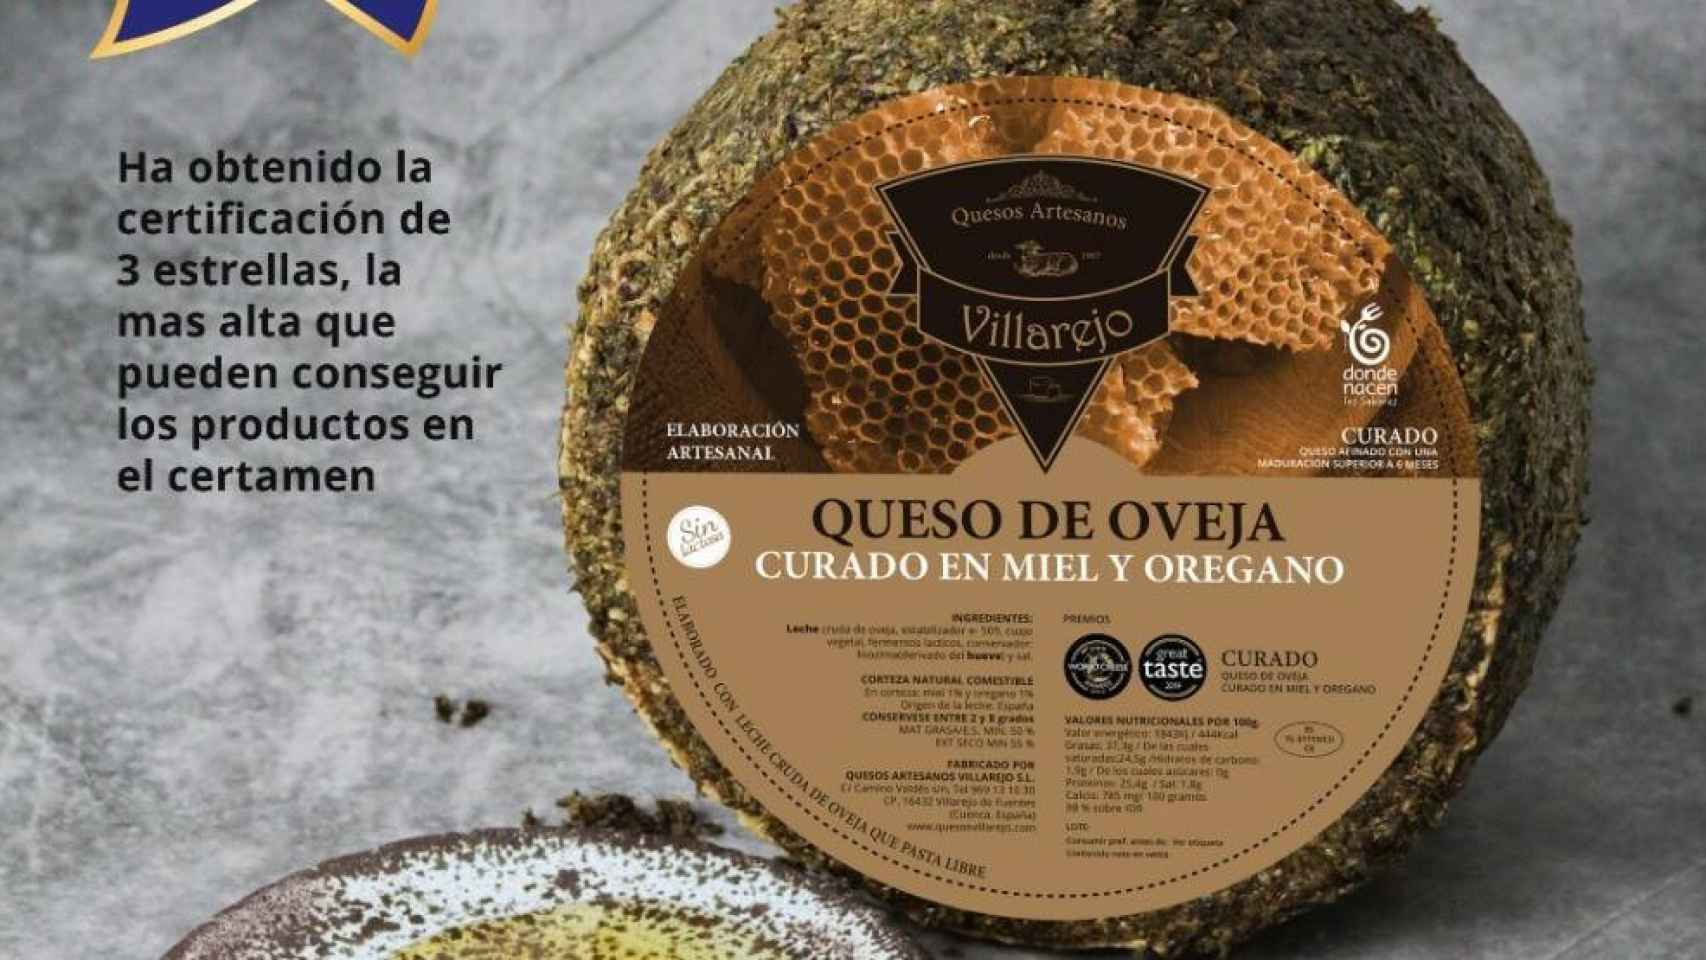 al queso de oveja curado en miel y orégano “Villarejo”